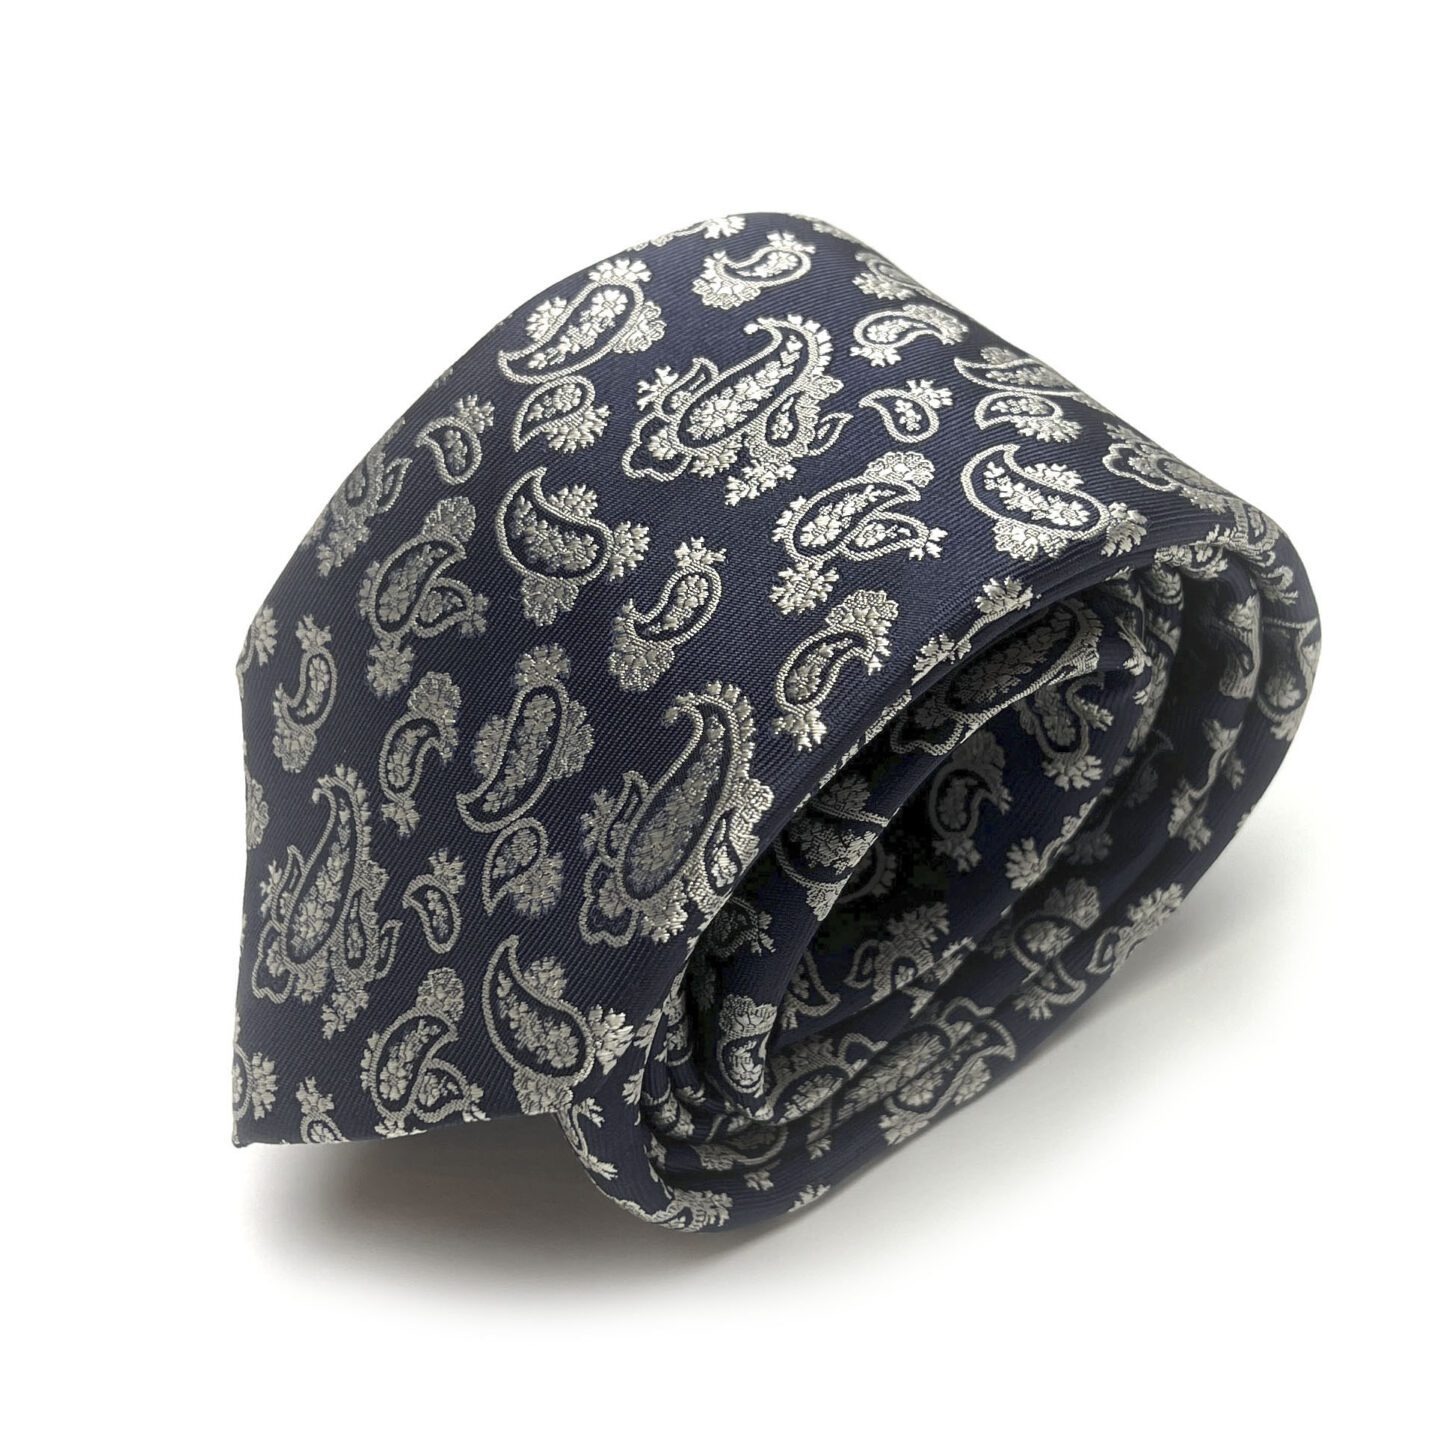 Tamsiai mėlynas vyriškas kaklaraištis puoštas kreminiu "paisley" raštu